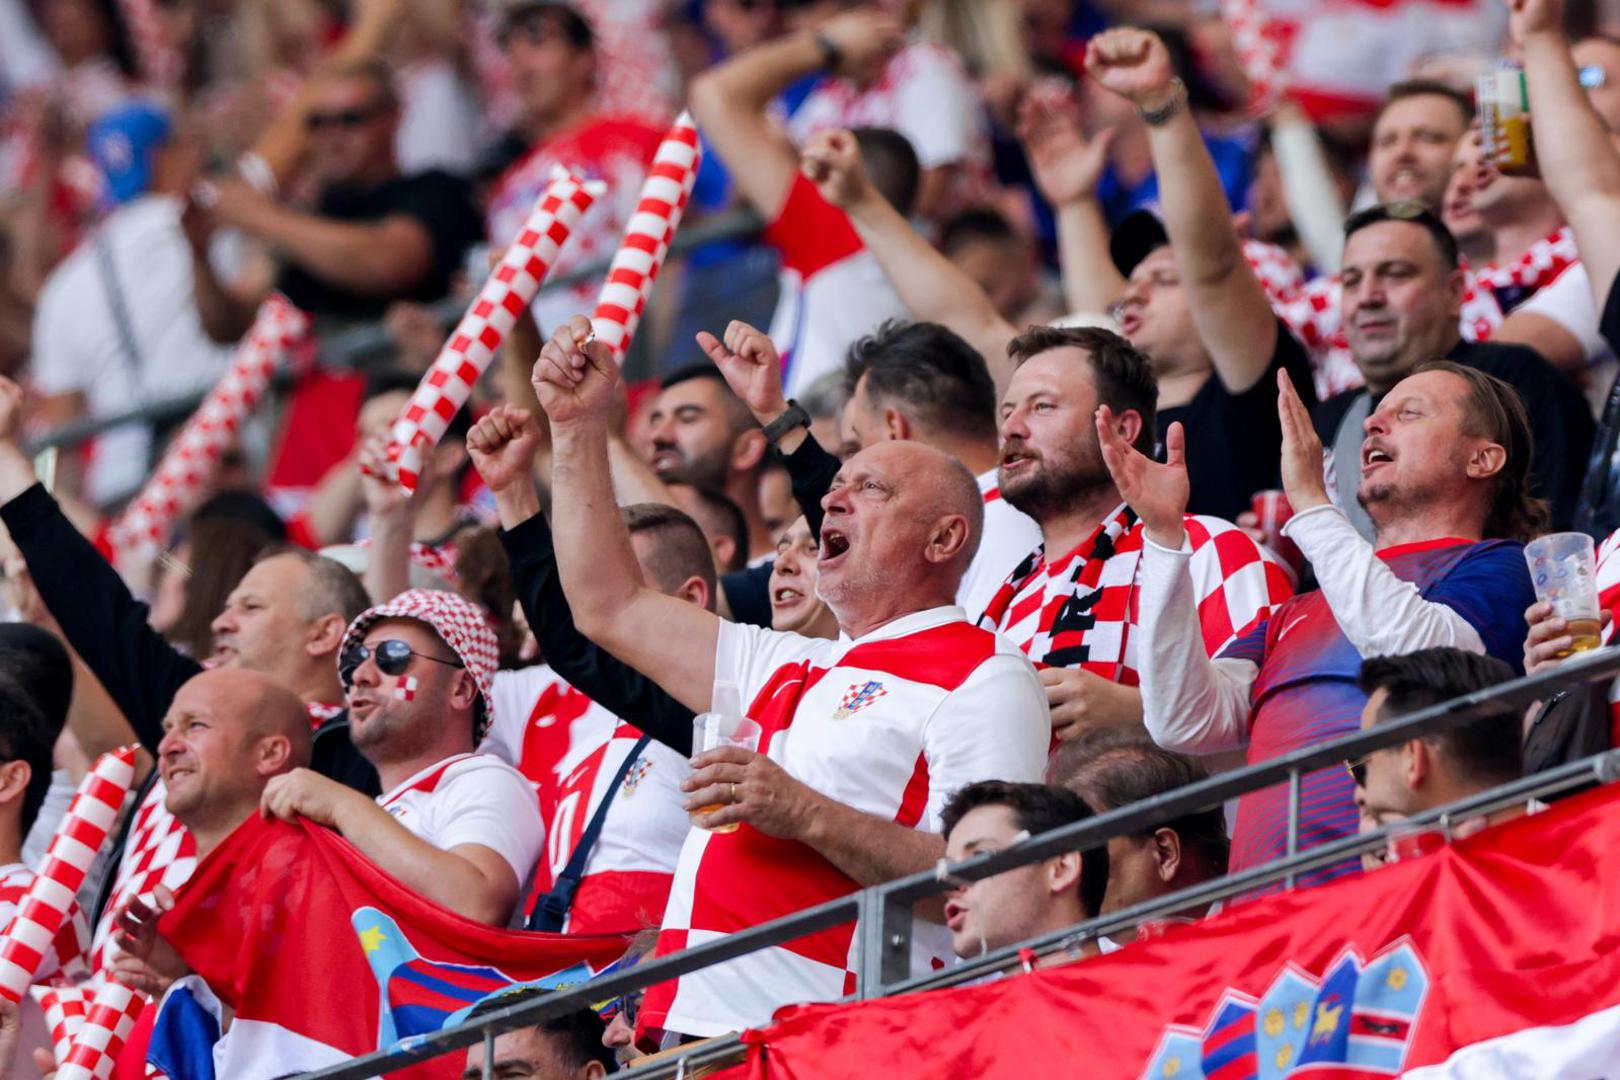 Hrvatski navijači opet su u velikom broju na utakmici Hrvatske. Ovog puta su na VolkPark stadionu kojim dominiraju kockice. 